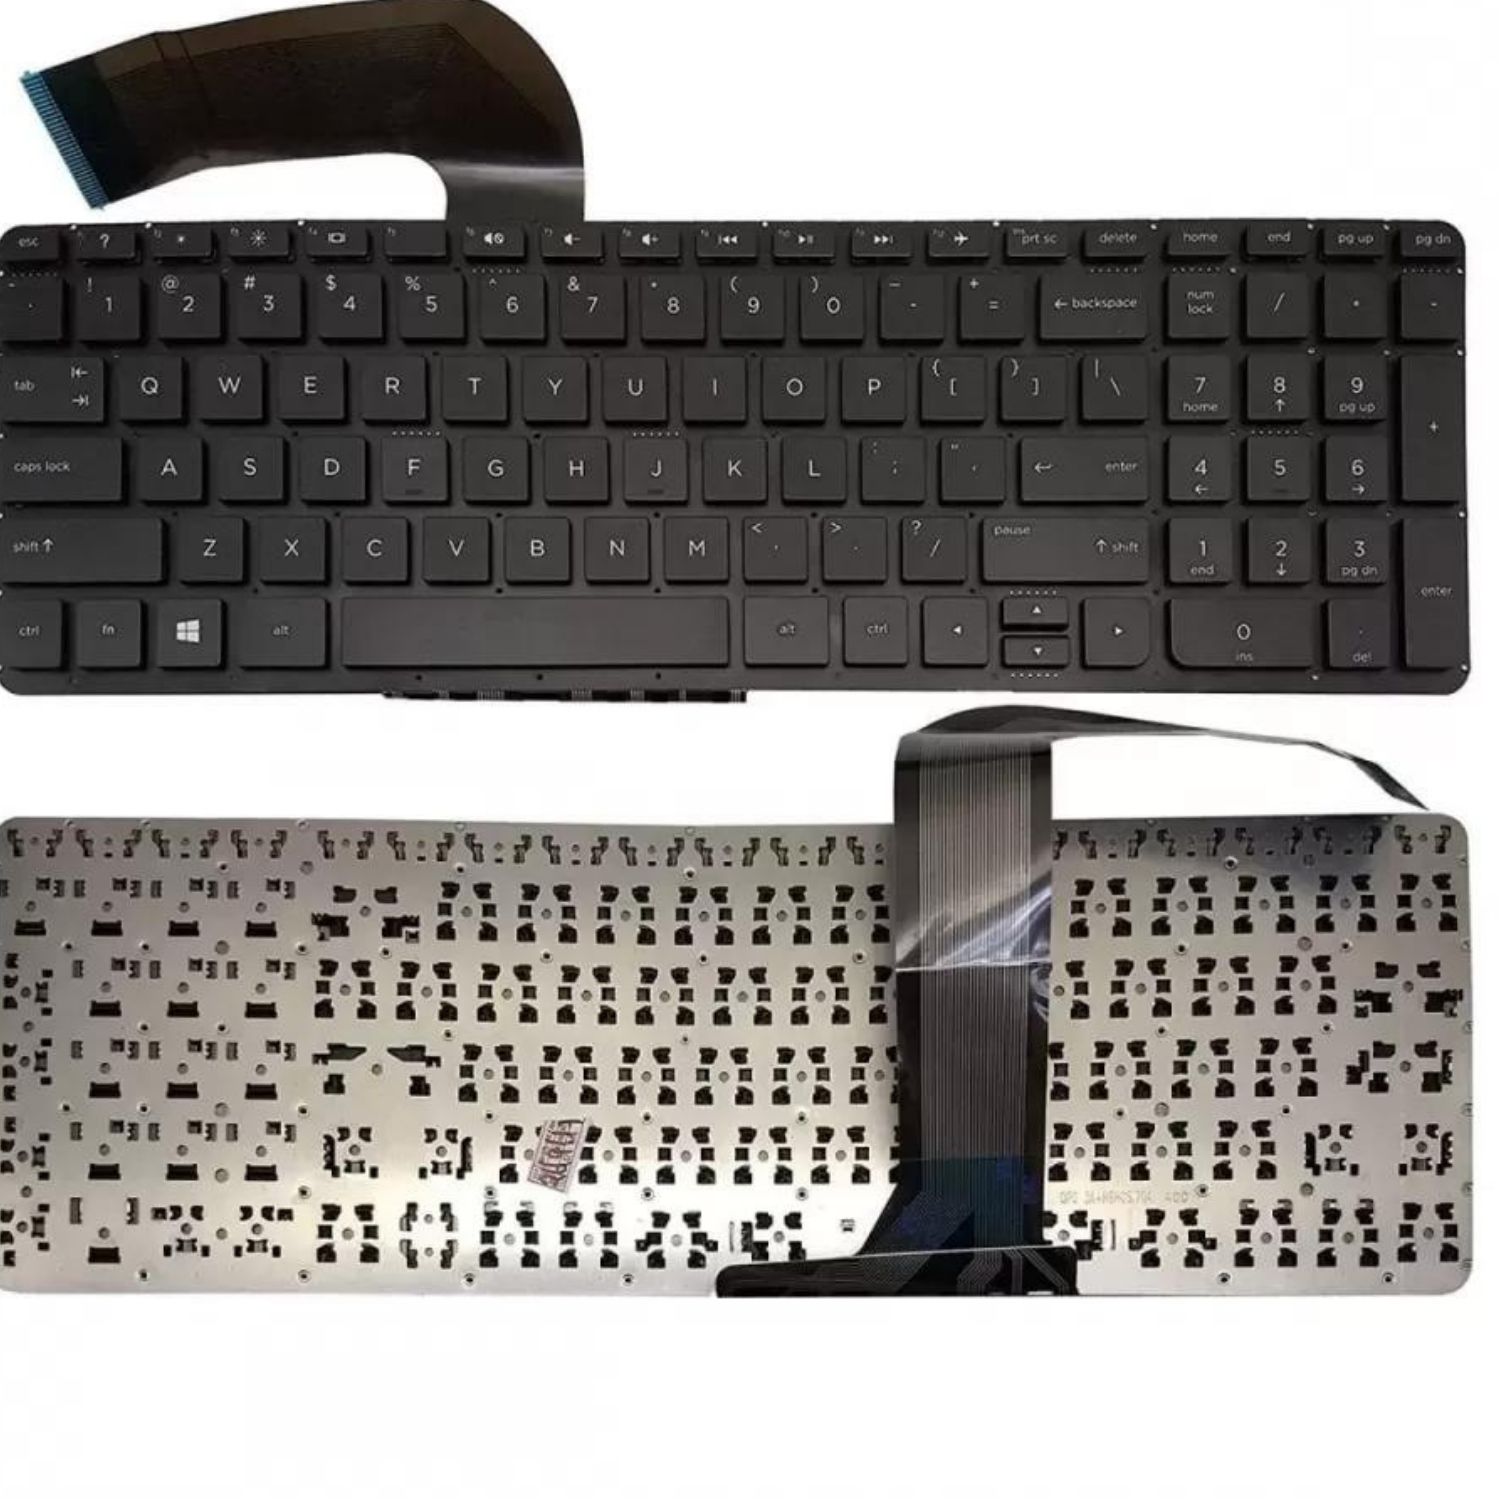 HP Pavilion 15-P 15-P00 15-P000 15T-P000 15T-P100 Laptop Keyboard